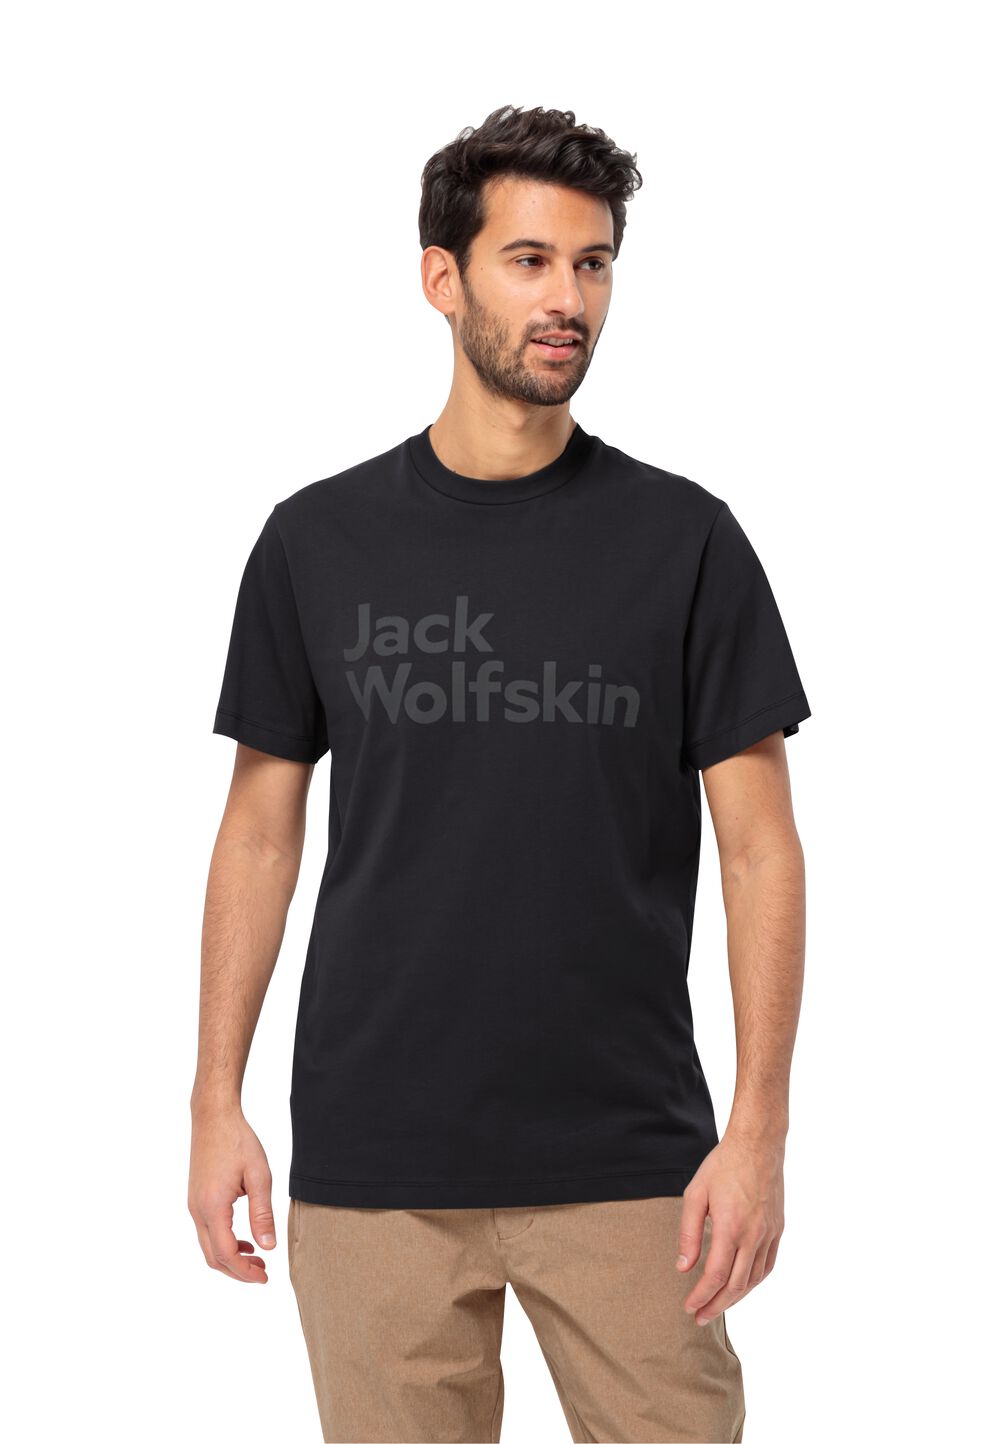 Jack Wolfskin T-Shirt aus Bio-Baumwolle Herren Essential Logo T-Shirt Men XXL schwarz black von Jack Wolfskin